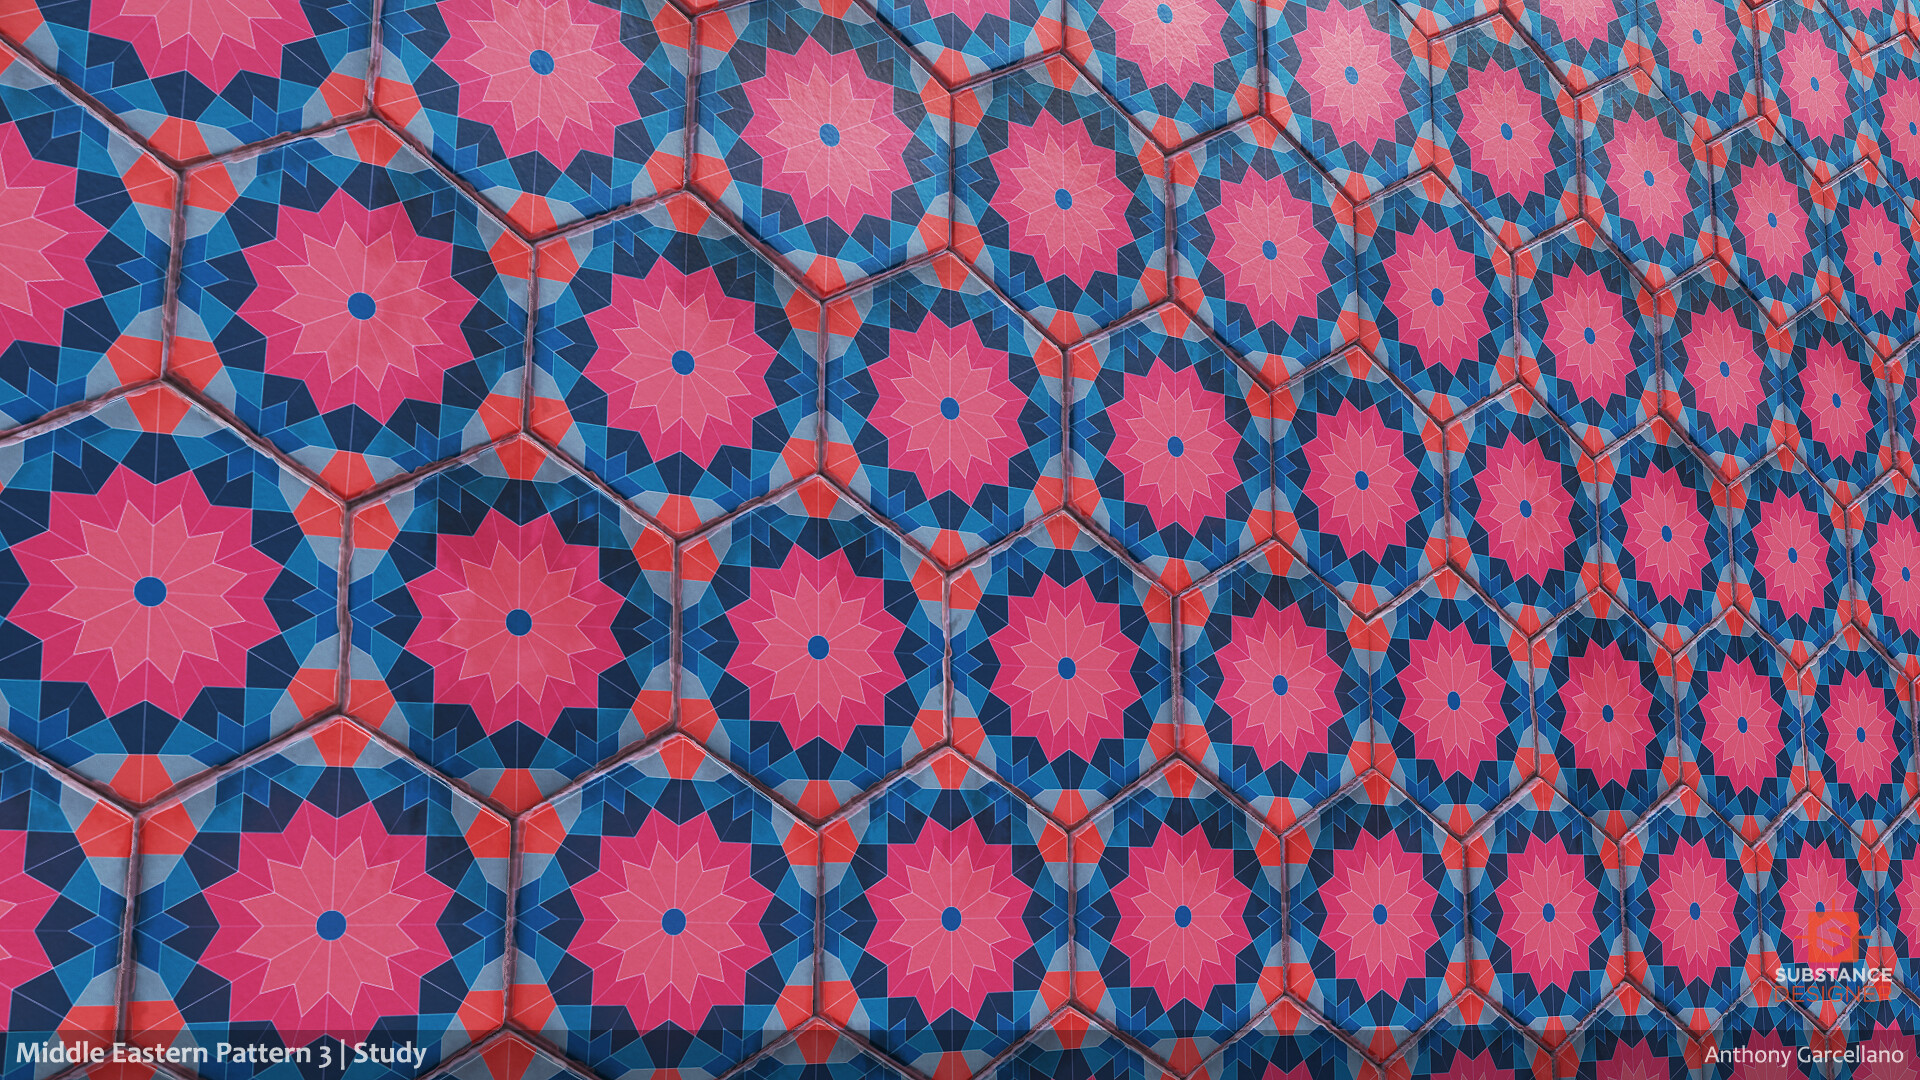 Pink, blue and orange patterned tiles